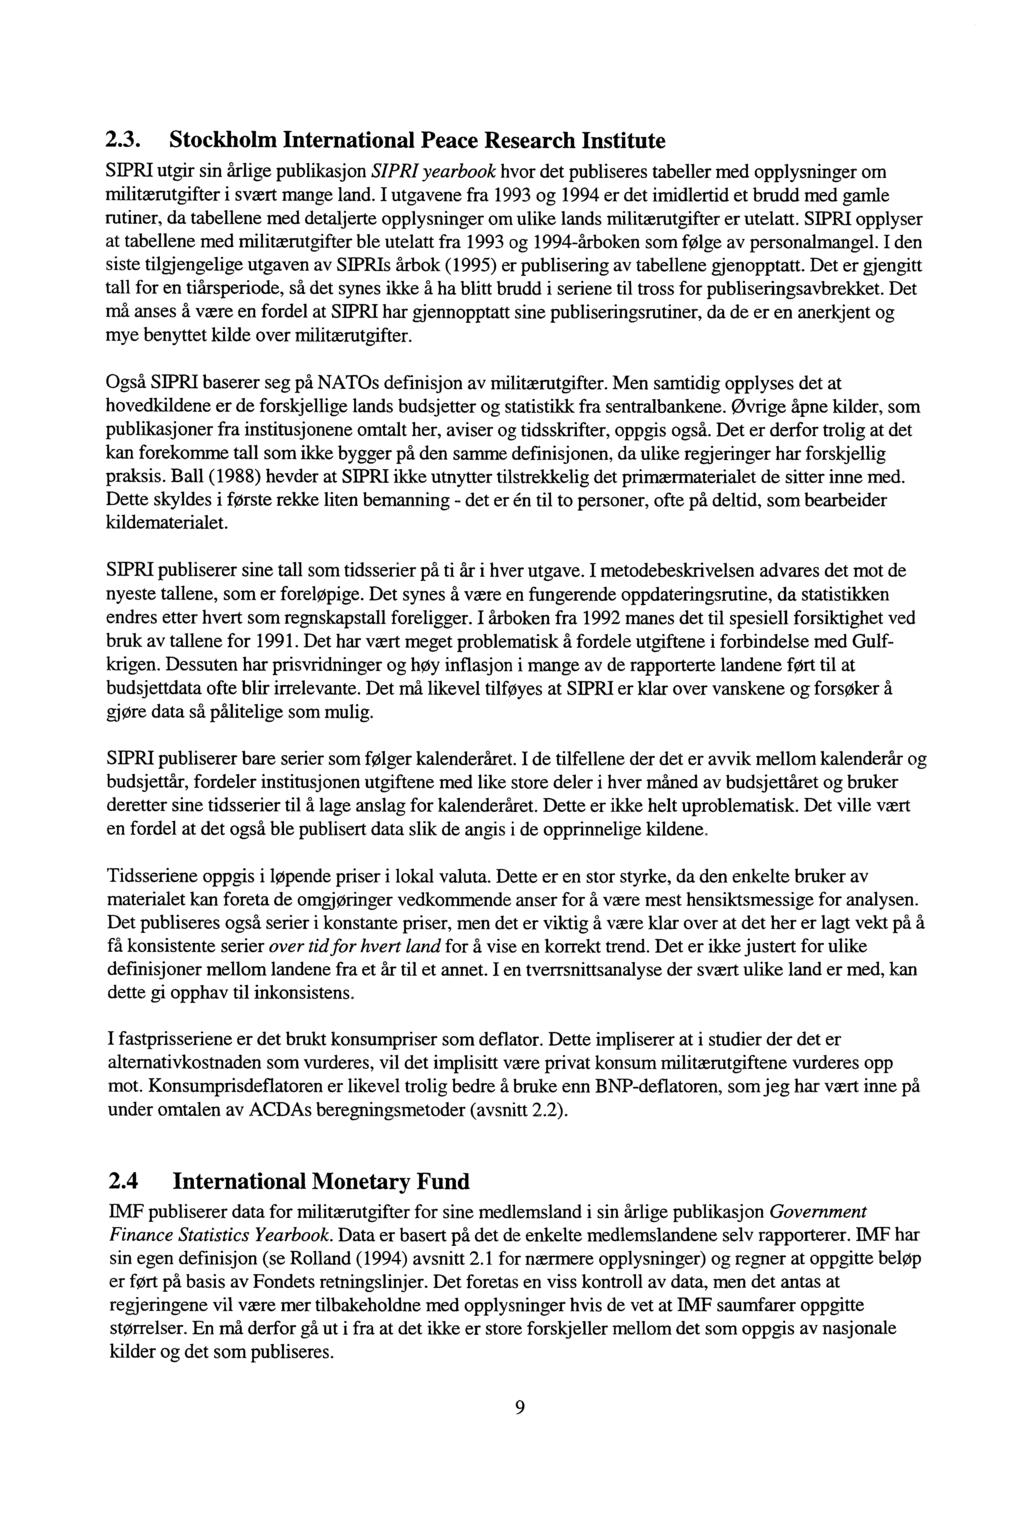 2.3. Stockholm International Peace Research Institute SIPRI utgir sin årlige publikasjon SIPRI yearbook hvor det publiseres tabeller med opplysninger om militærutgifter i svært mange land.